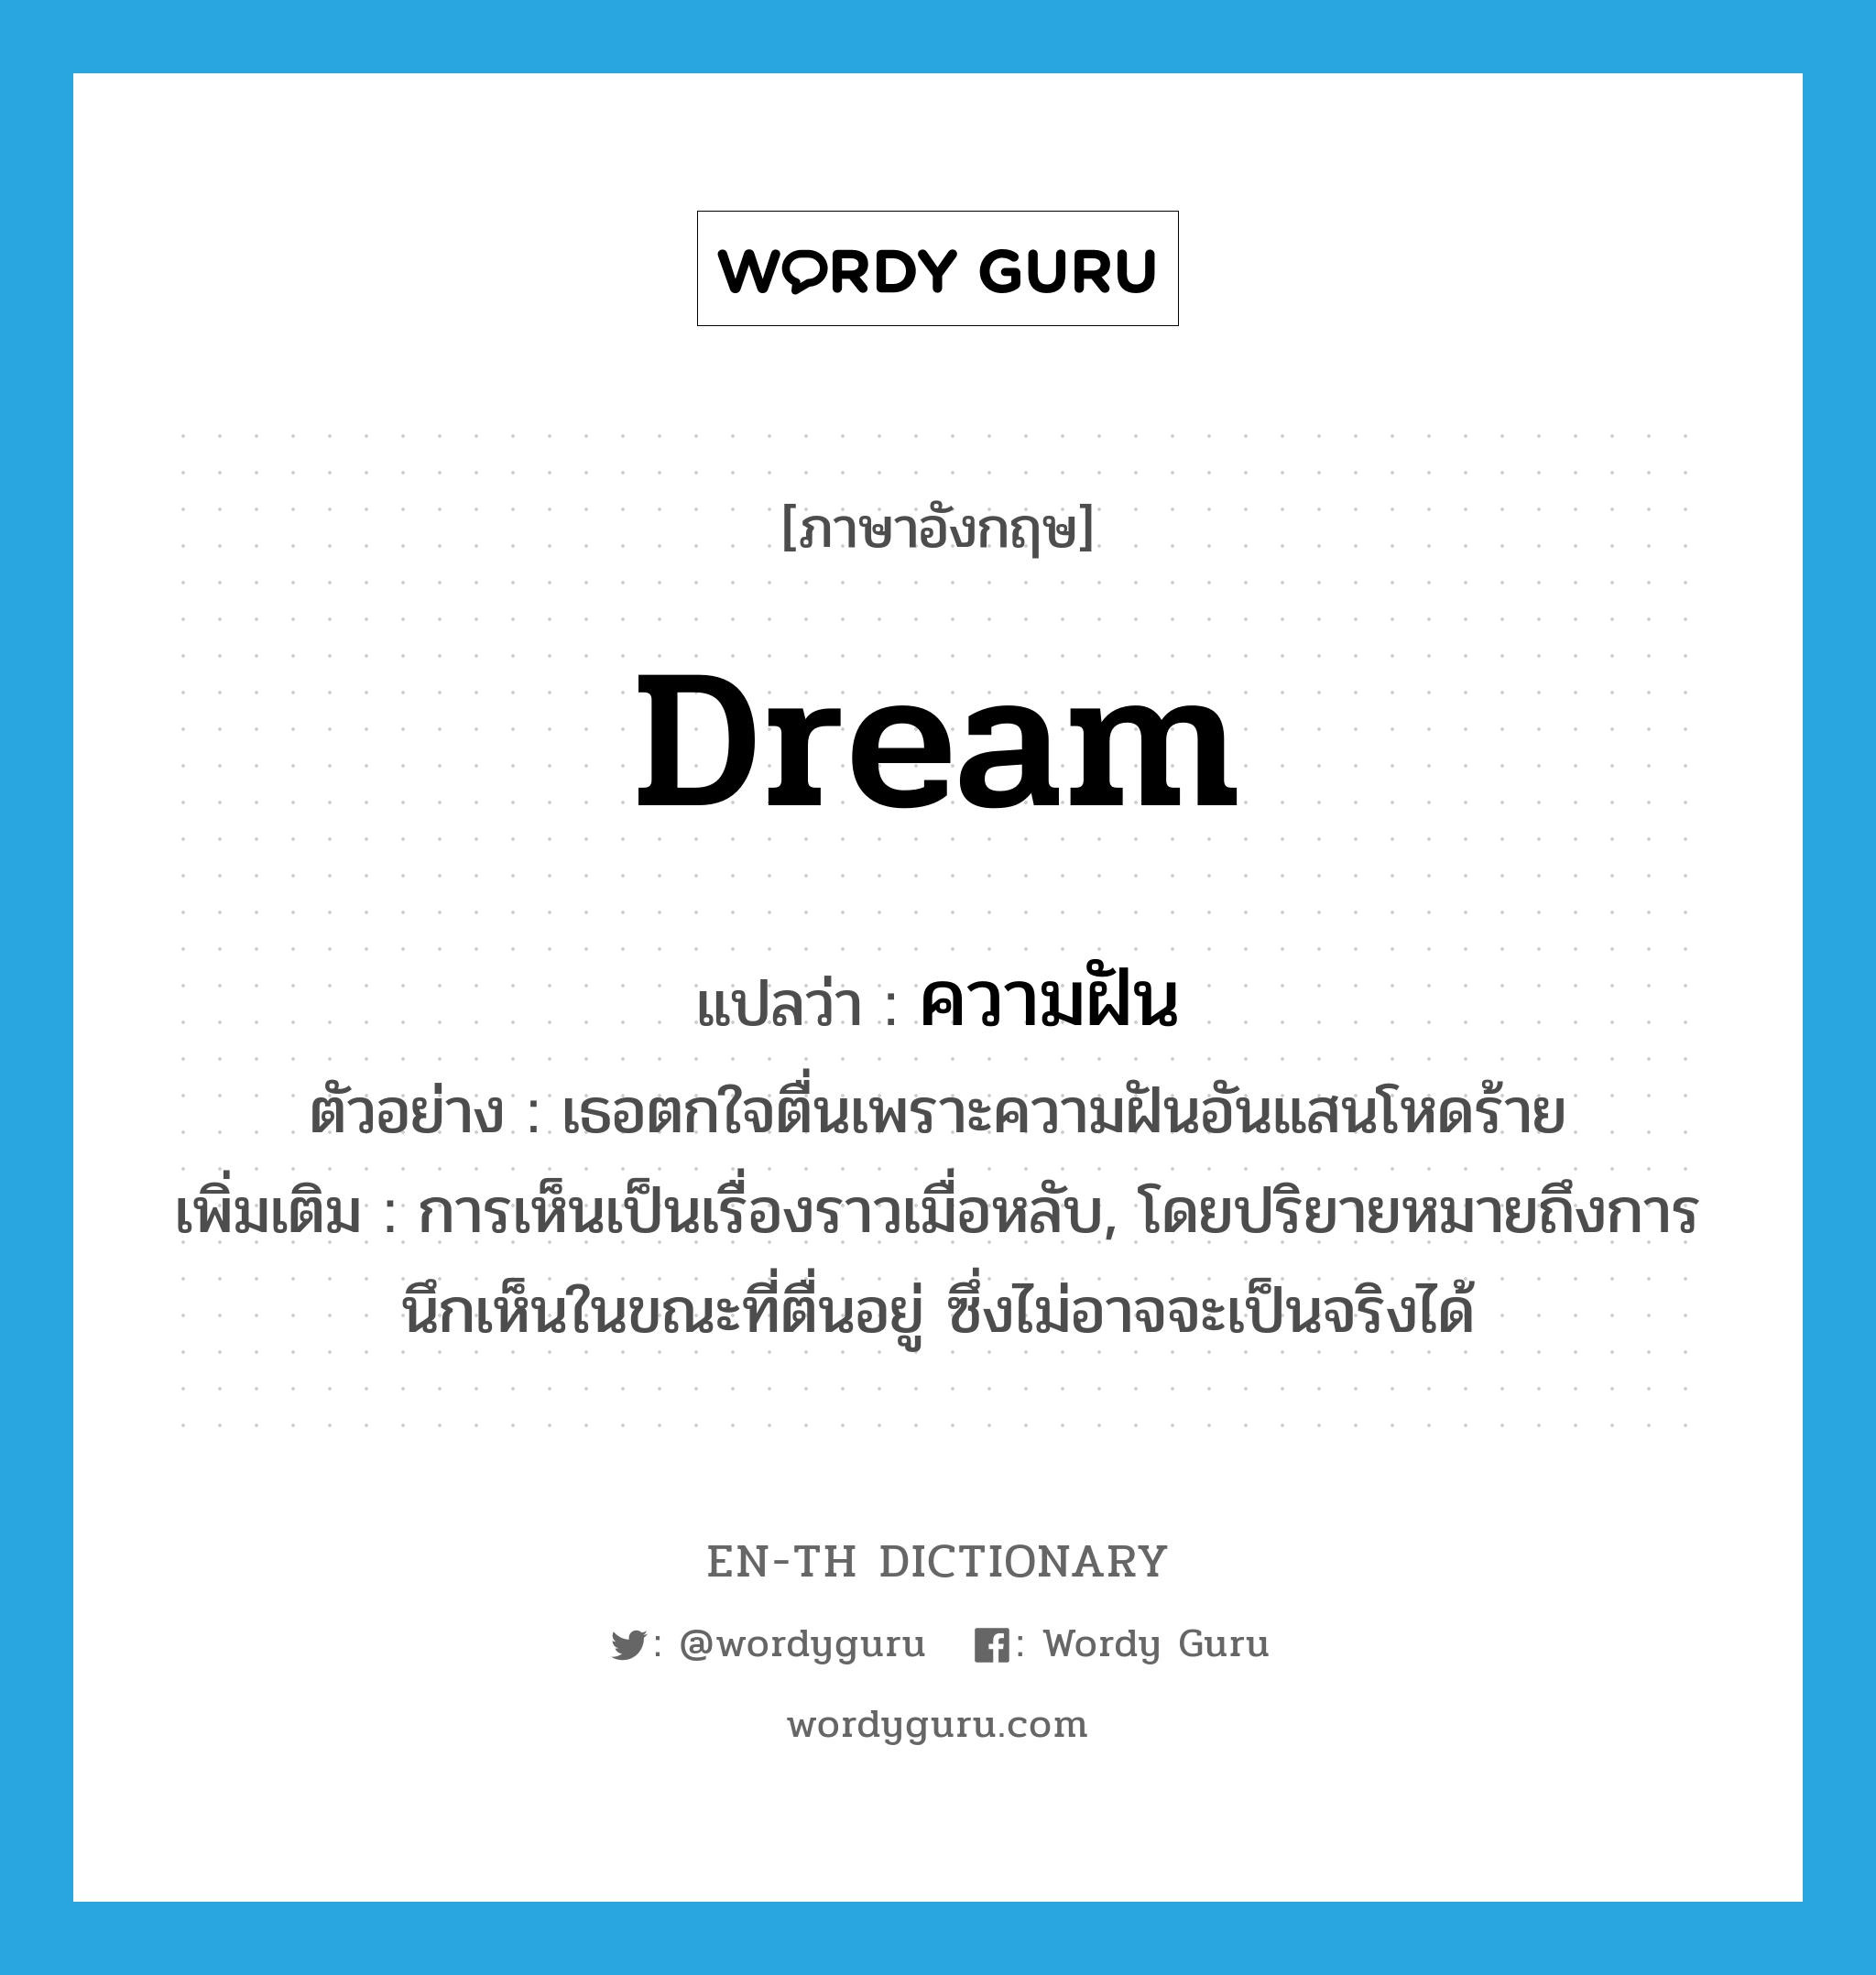 dream แปลว่า?, คำศัพท์ภาษาอังกฤษ dream แปลว่า ความฝัน ประเภท N ตัวอย่าง เธอตกใจตื่นเพราะความฝันอันแสนโหดร้าย เพิ่มเติม การเห็นเป็นเรื่องราวเมื่อหลับ, โดยปริยายหมายถึงการนึกเห็นในขณะที่ตื่นอยู่ ซึ่งไม่อาจจะเป็นจริงได้ หมวด N